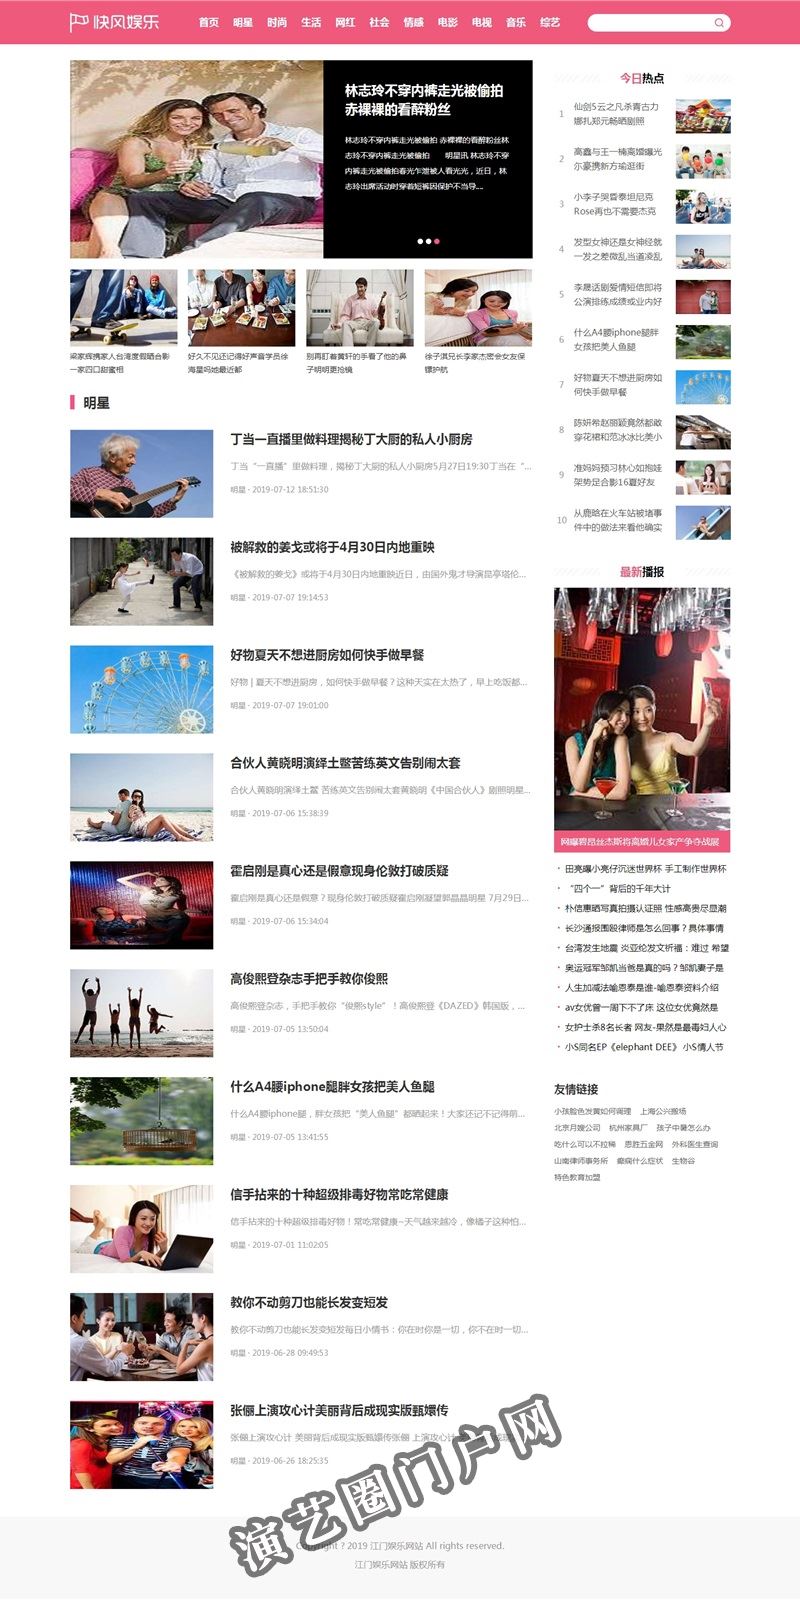 娱乐新闻资讯_最新明星娱乐新闻专题汇总_江门娱乐网站截图